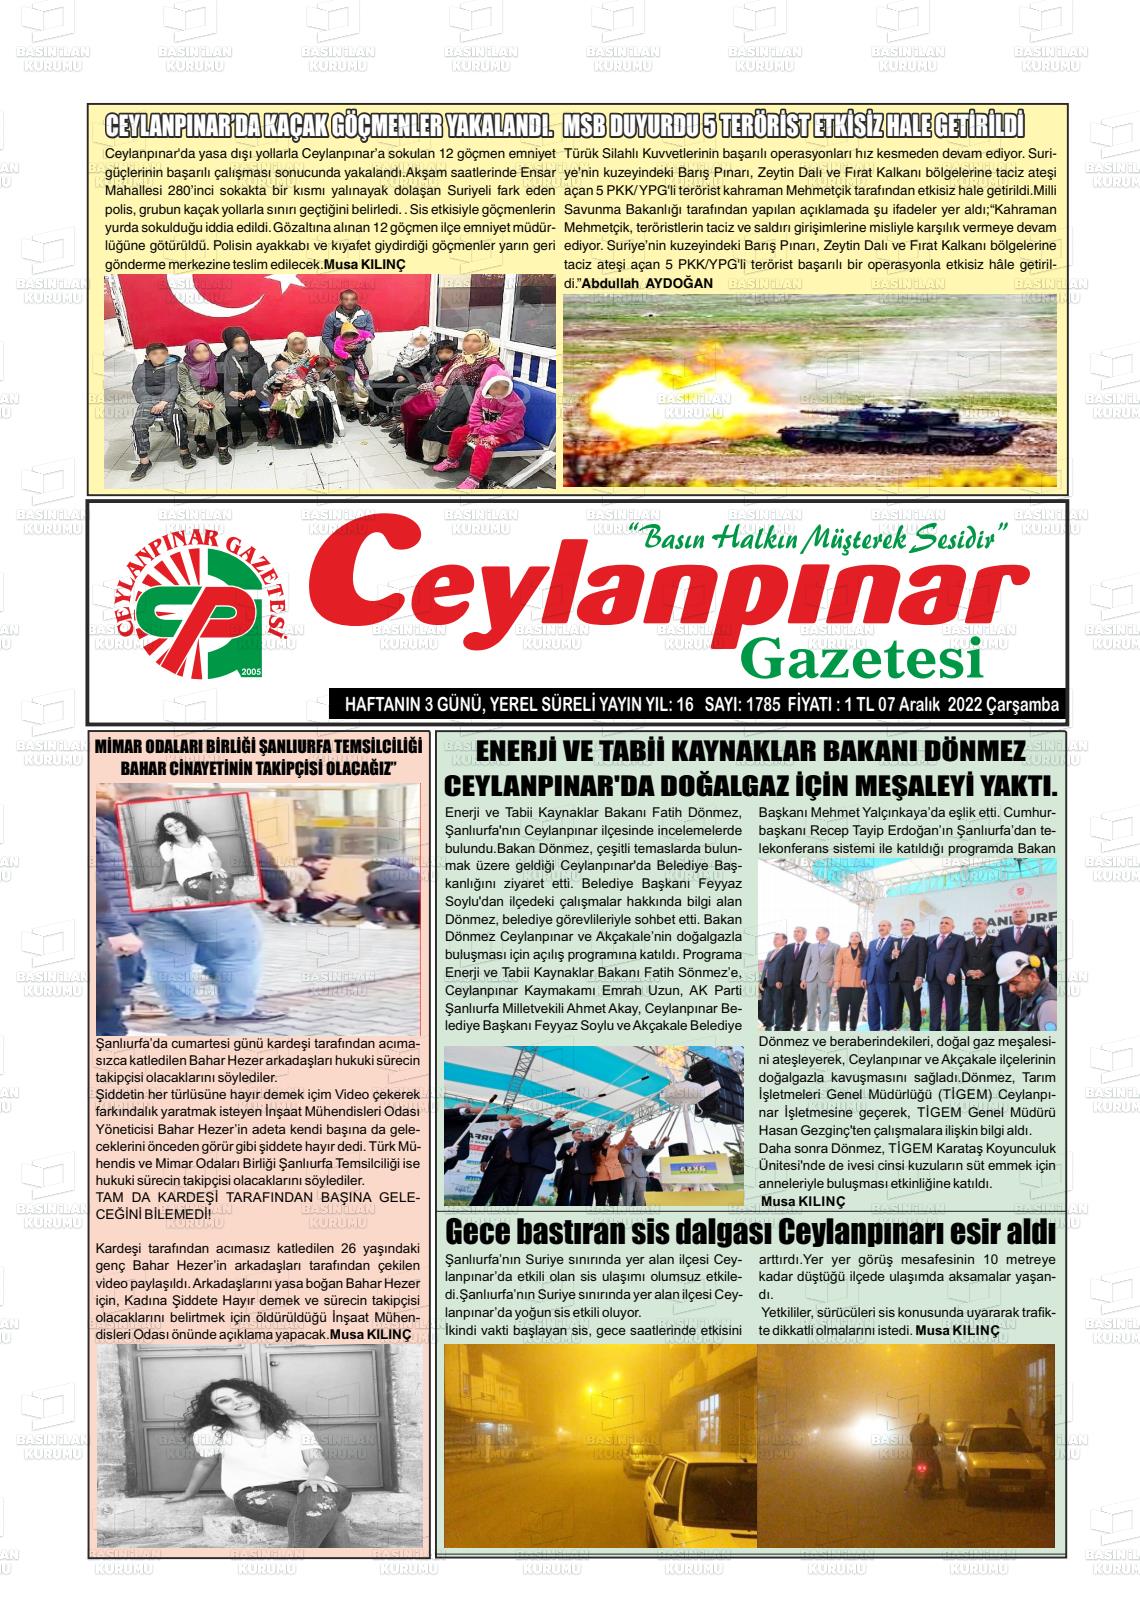 07 Aralık 2022 Ceylanpınar Gazete Manşeti